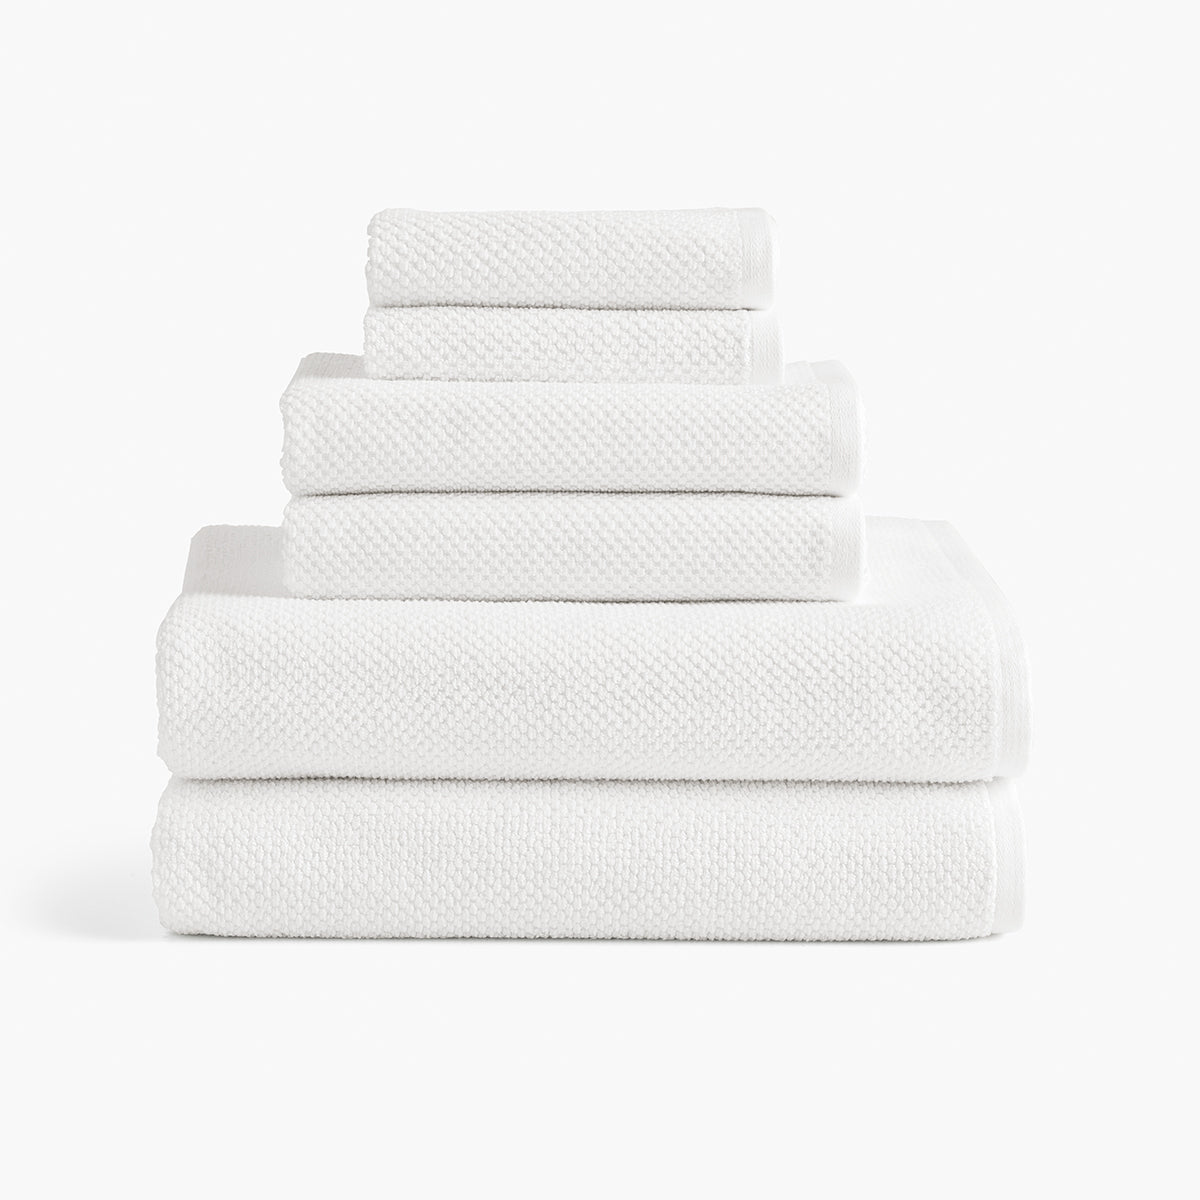 My Pillow Towel Bath Mat 34X 20 Sage